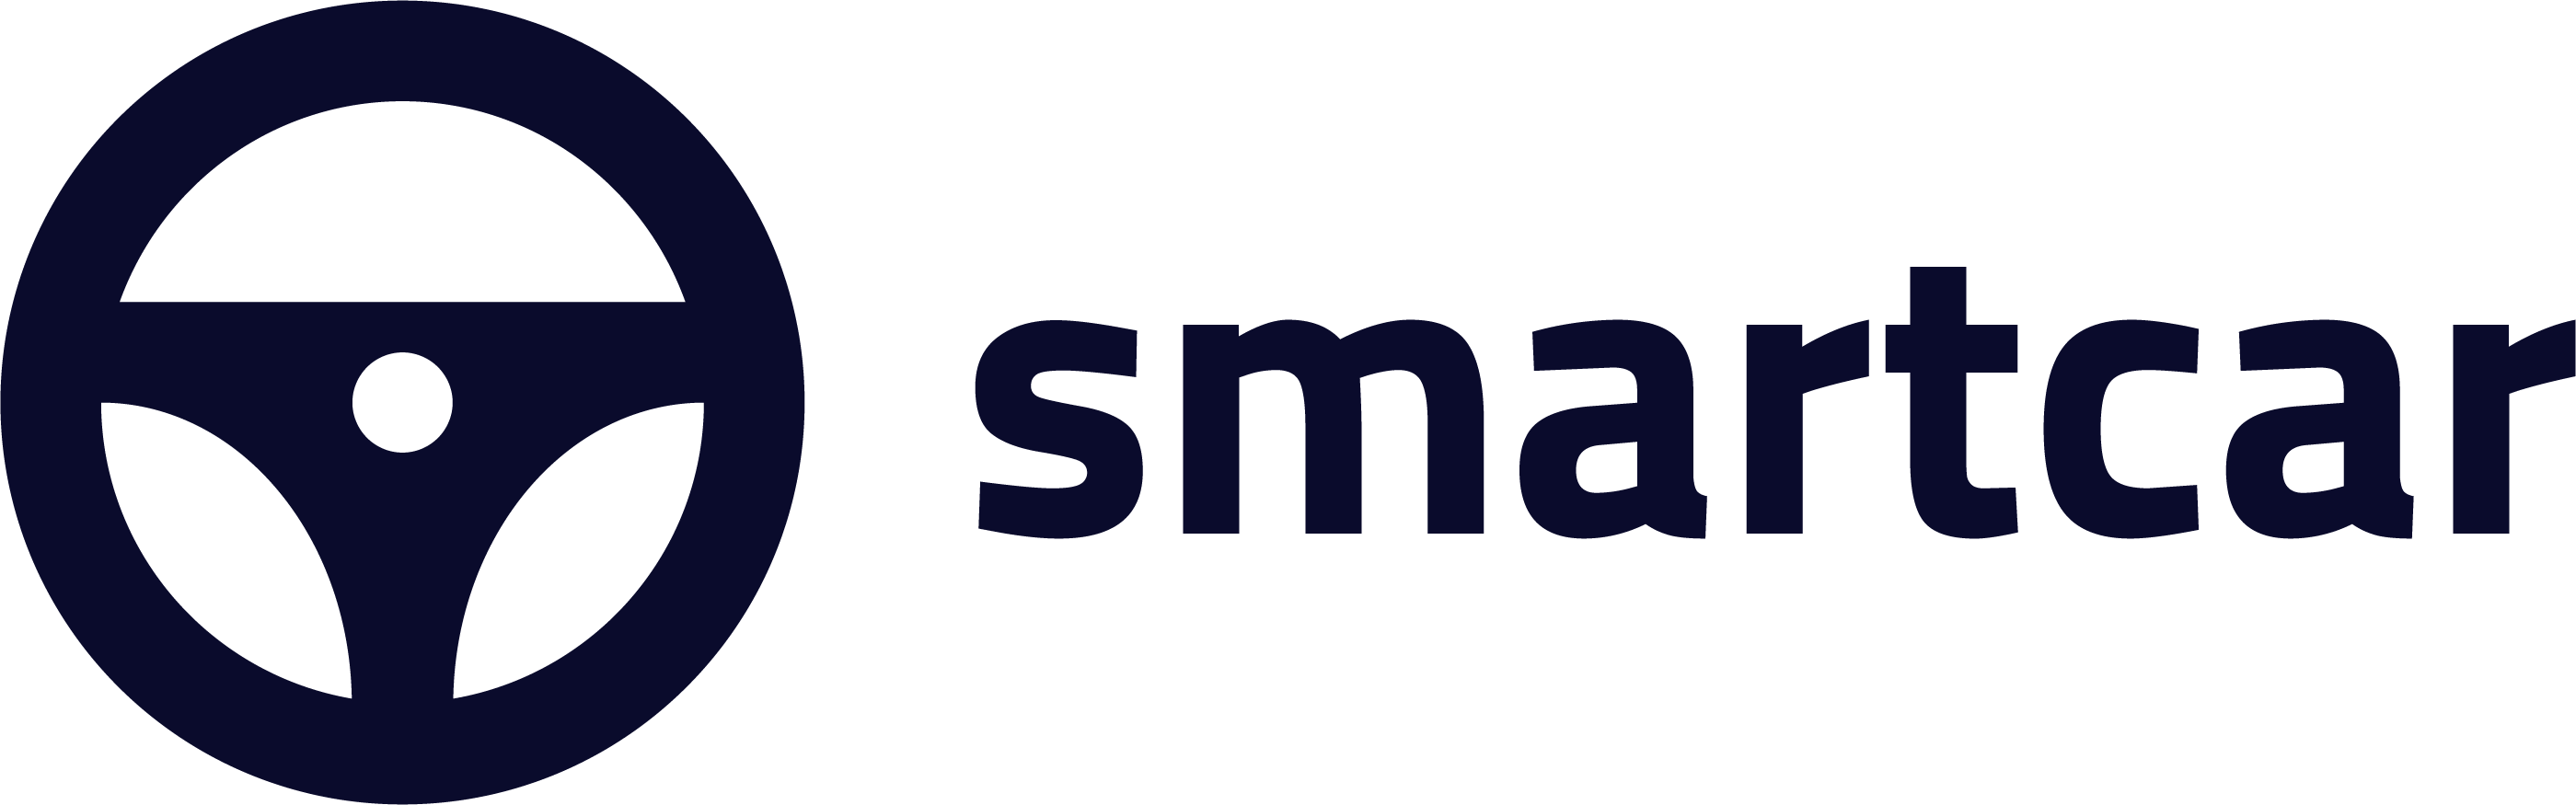 Smartcar Logo png